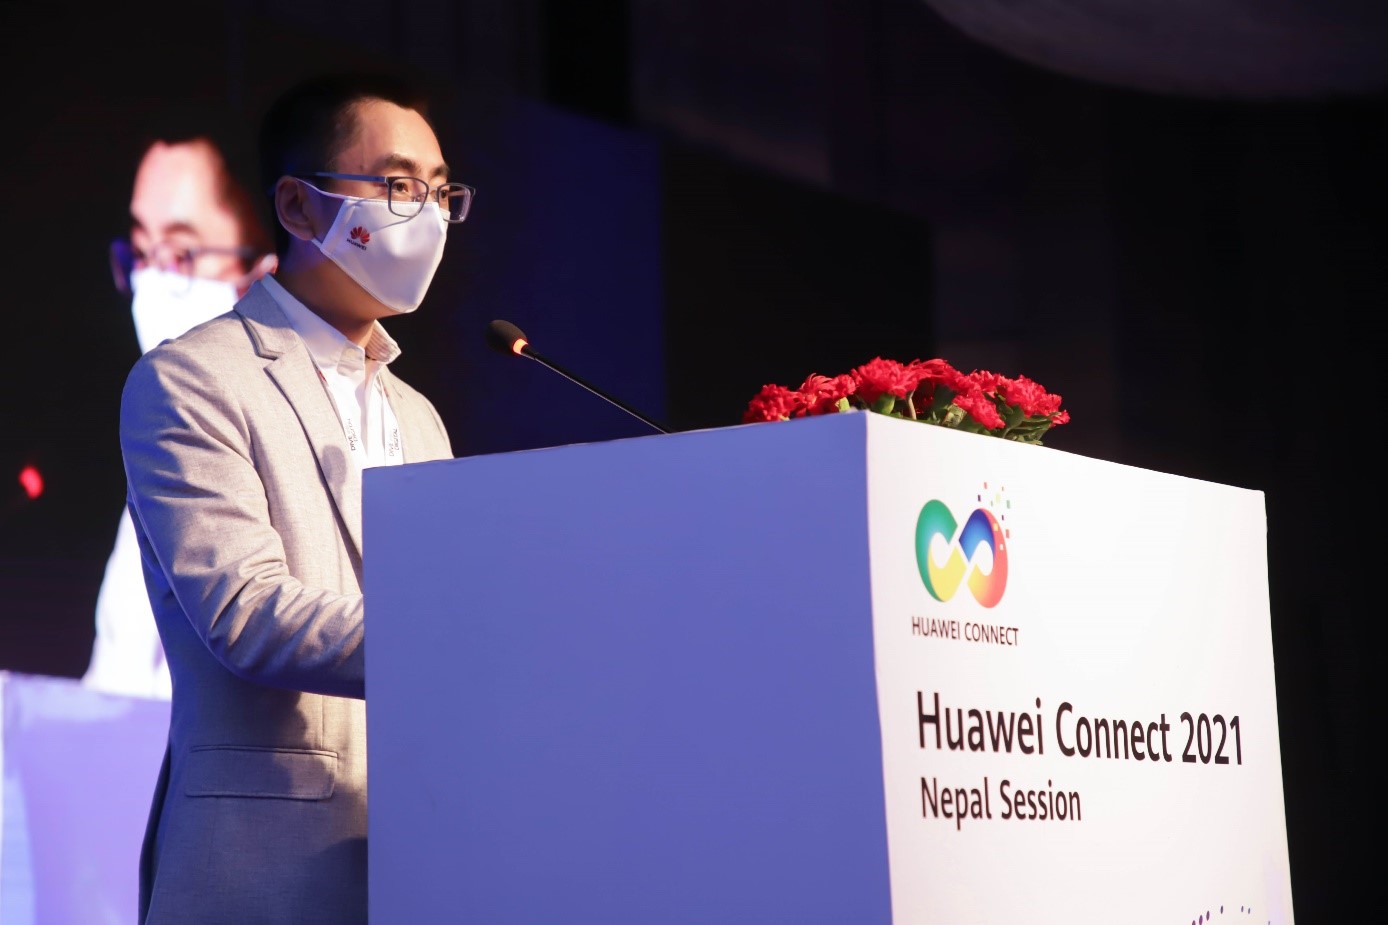 Mr. Zhang Zhengjun (Mr. Jun) - Huawei Asia Pacific Vice President and Huawei Nepal Chairman of the board